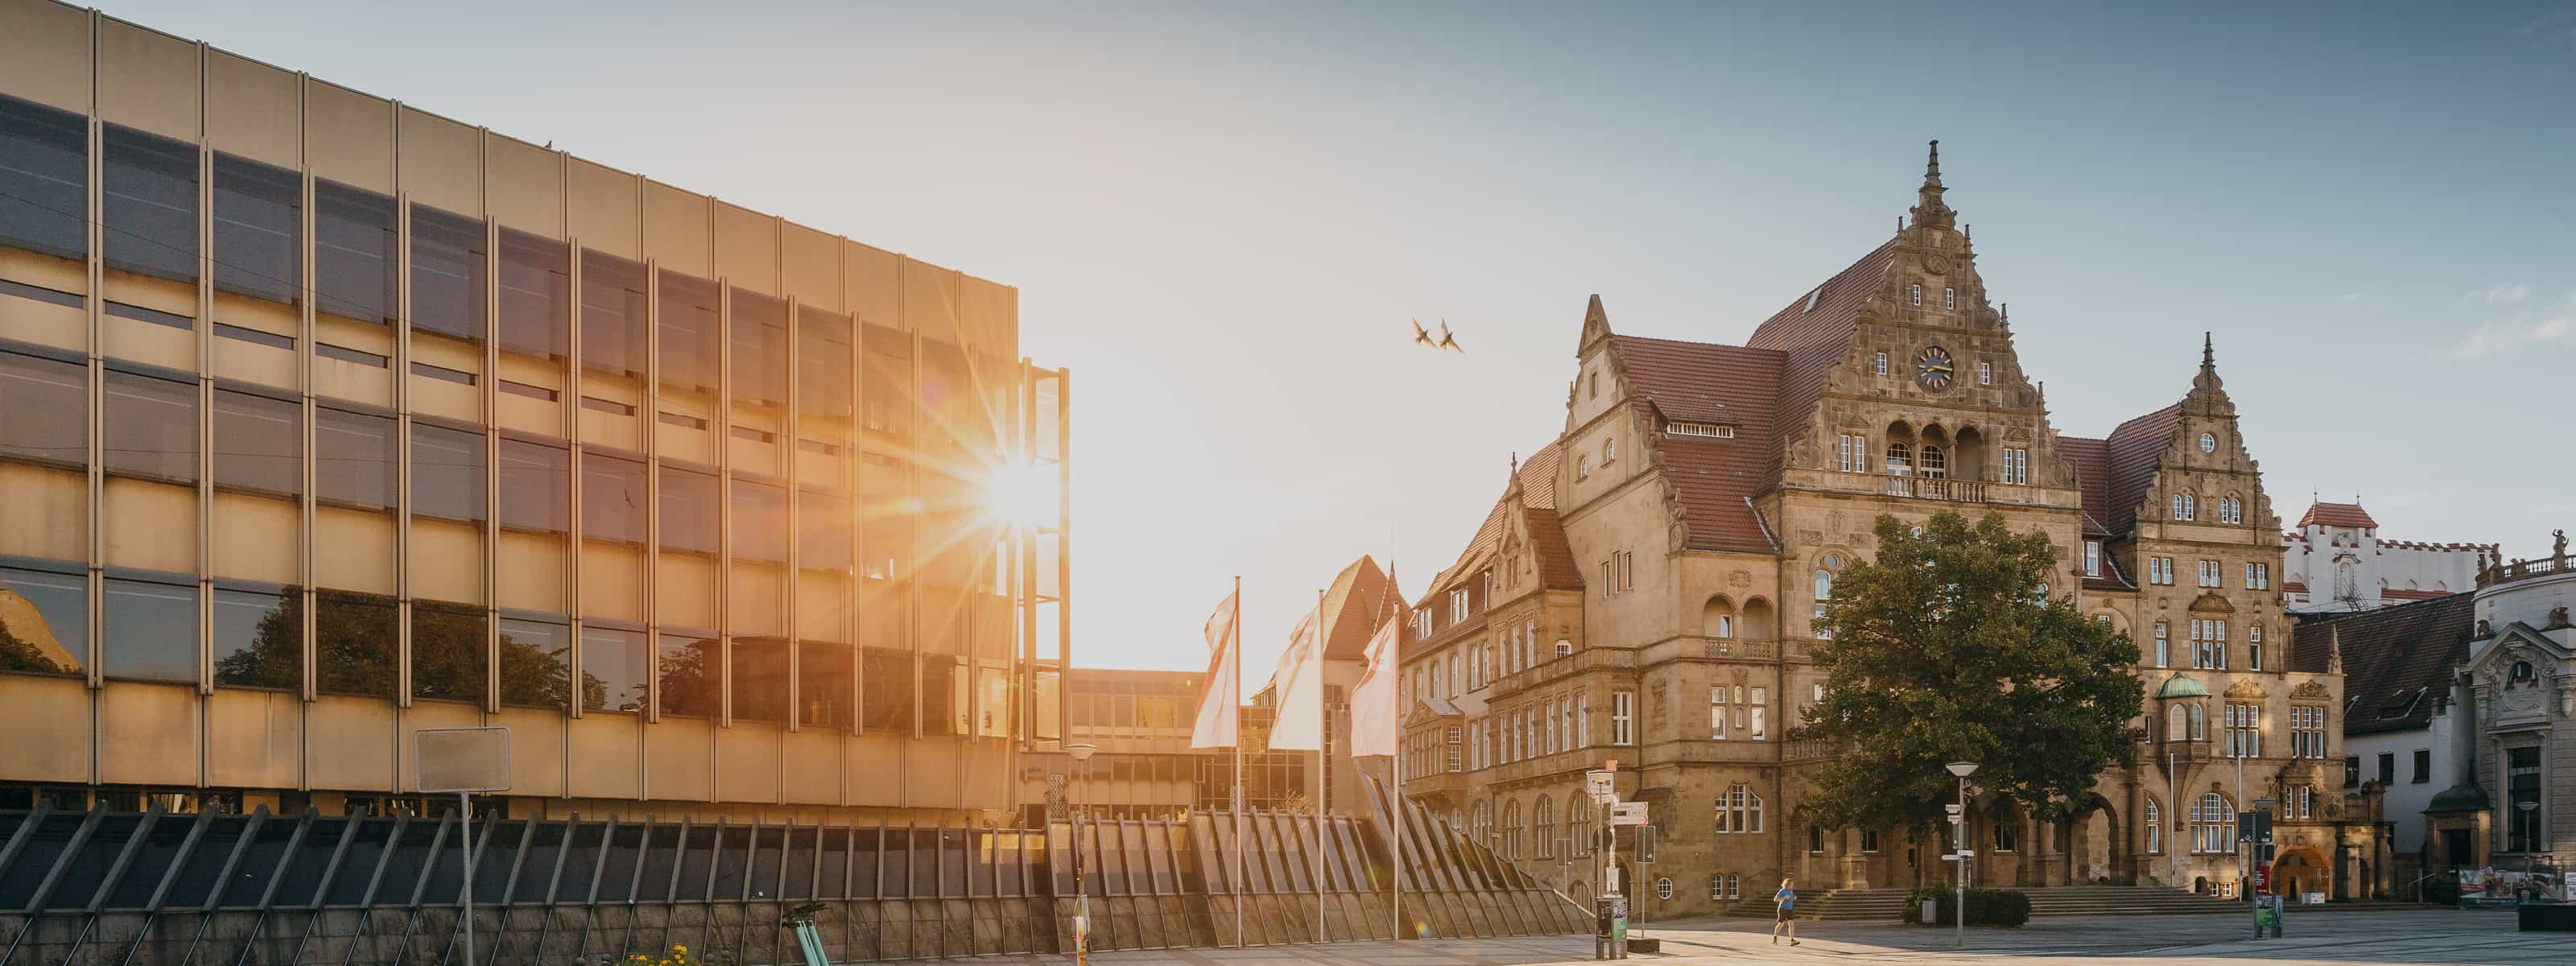 Der Bielefelder Rathausplatz im Sonnenaufgang